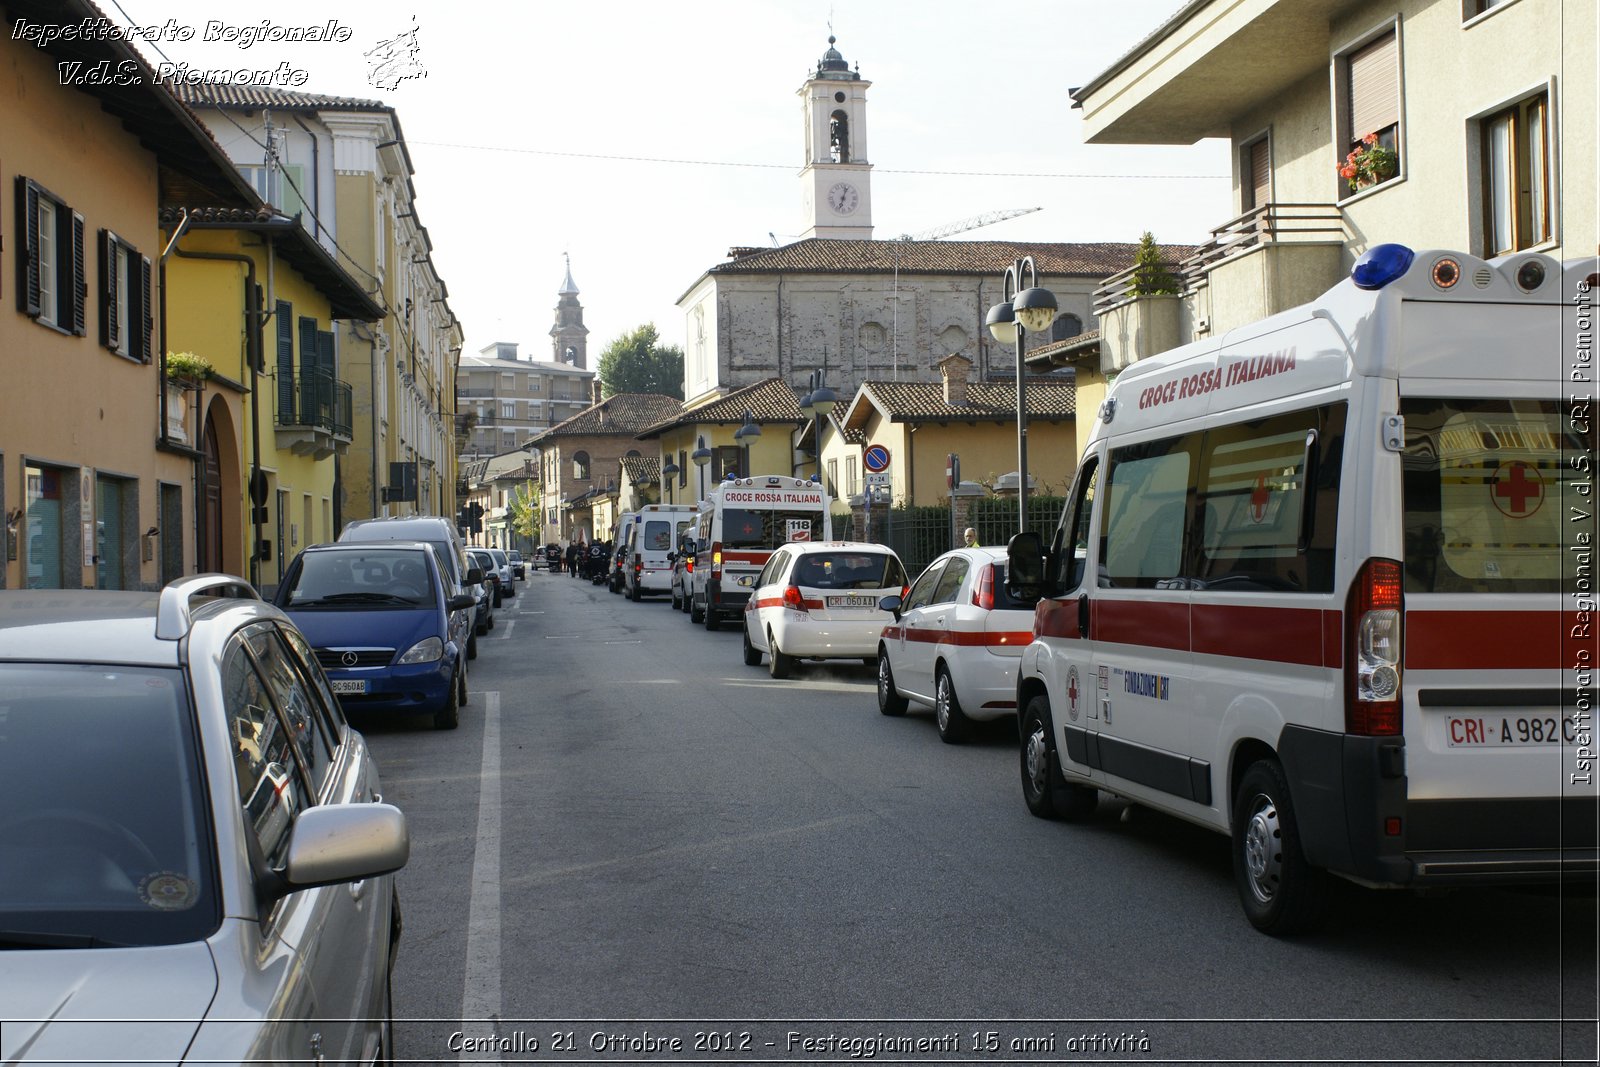 Centallo 21 Ottobre 2012 - Festeggiamenti 15 anni attivit - Croce Rossa Italiana - Ispettorato Regionale Volontari del Piemonte